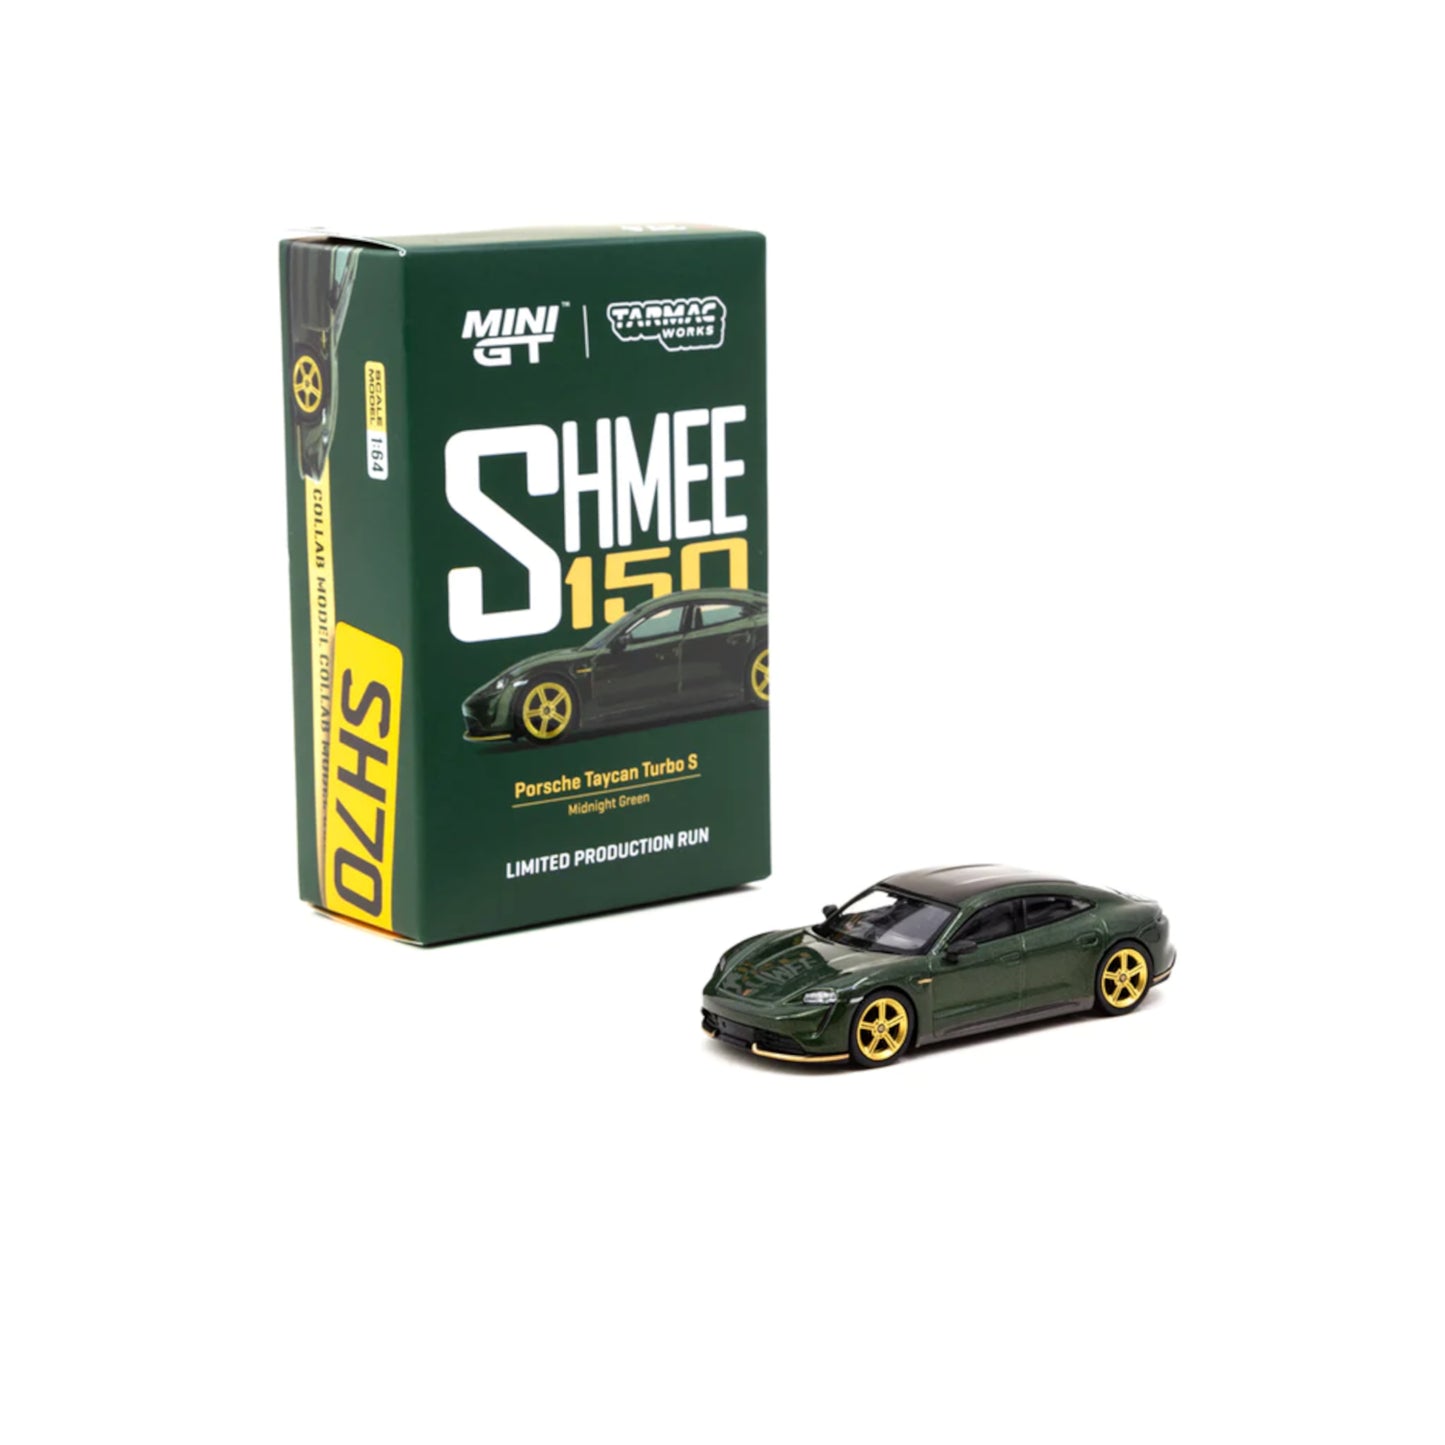 Porsche Taycan Turbo S RHD Tarmac Works X Mini GT X SHMEE150 1/64 | Motors Miniatures